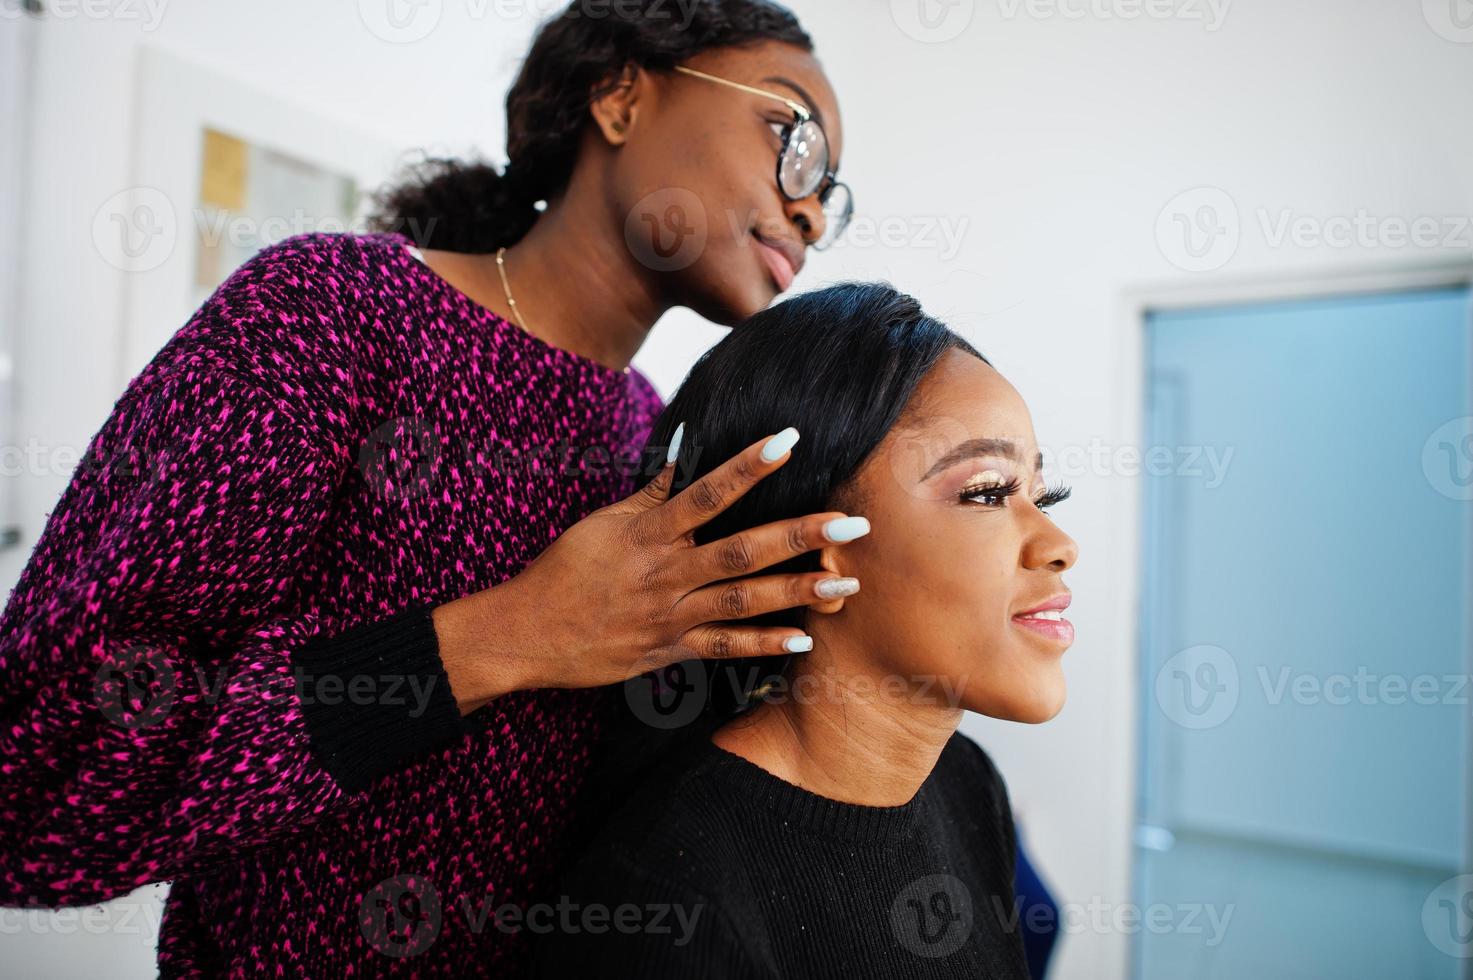 mujer afroamericana aplicando maquillaje por maquillador en el salón de belleza. foto